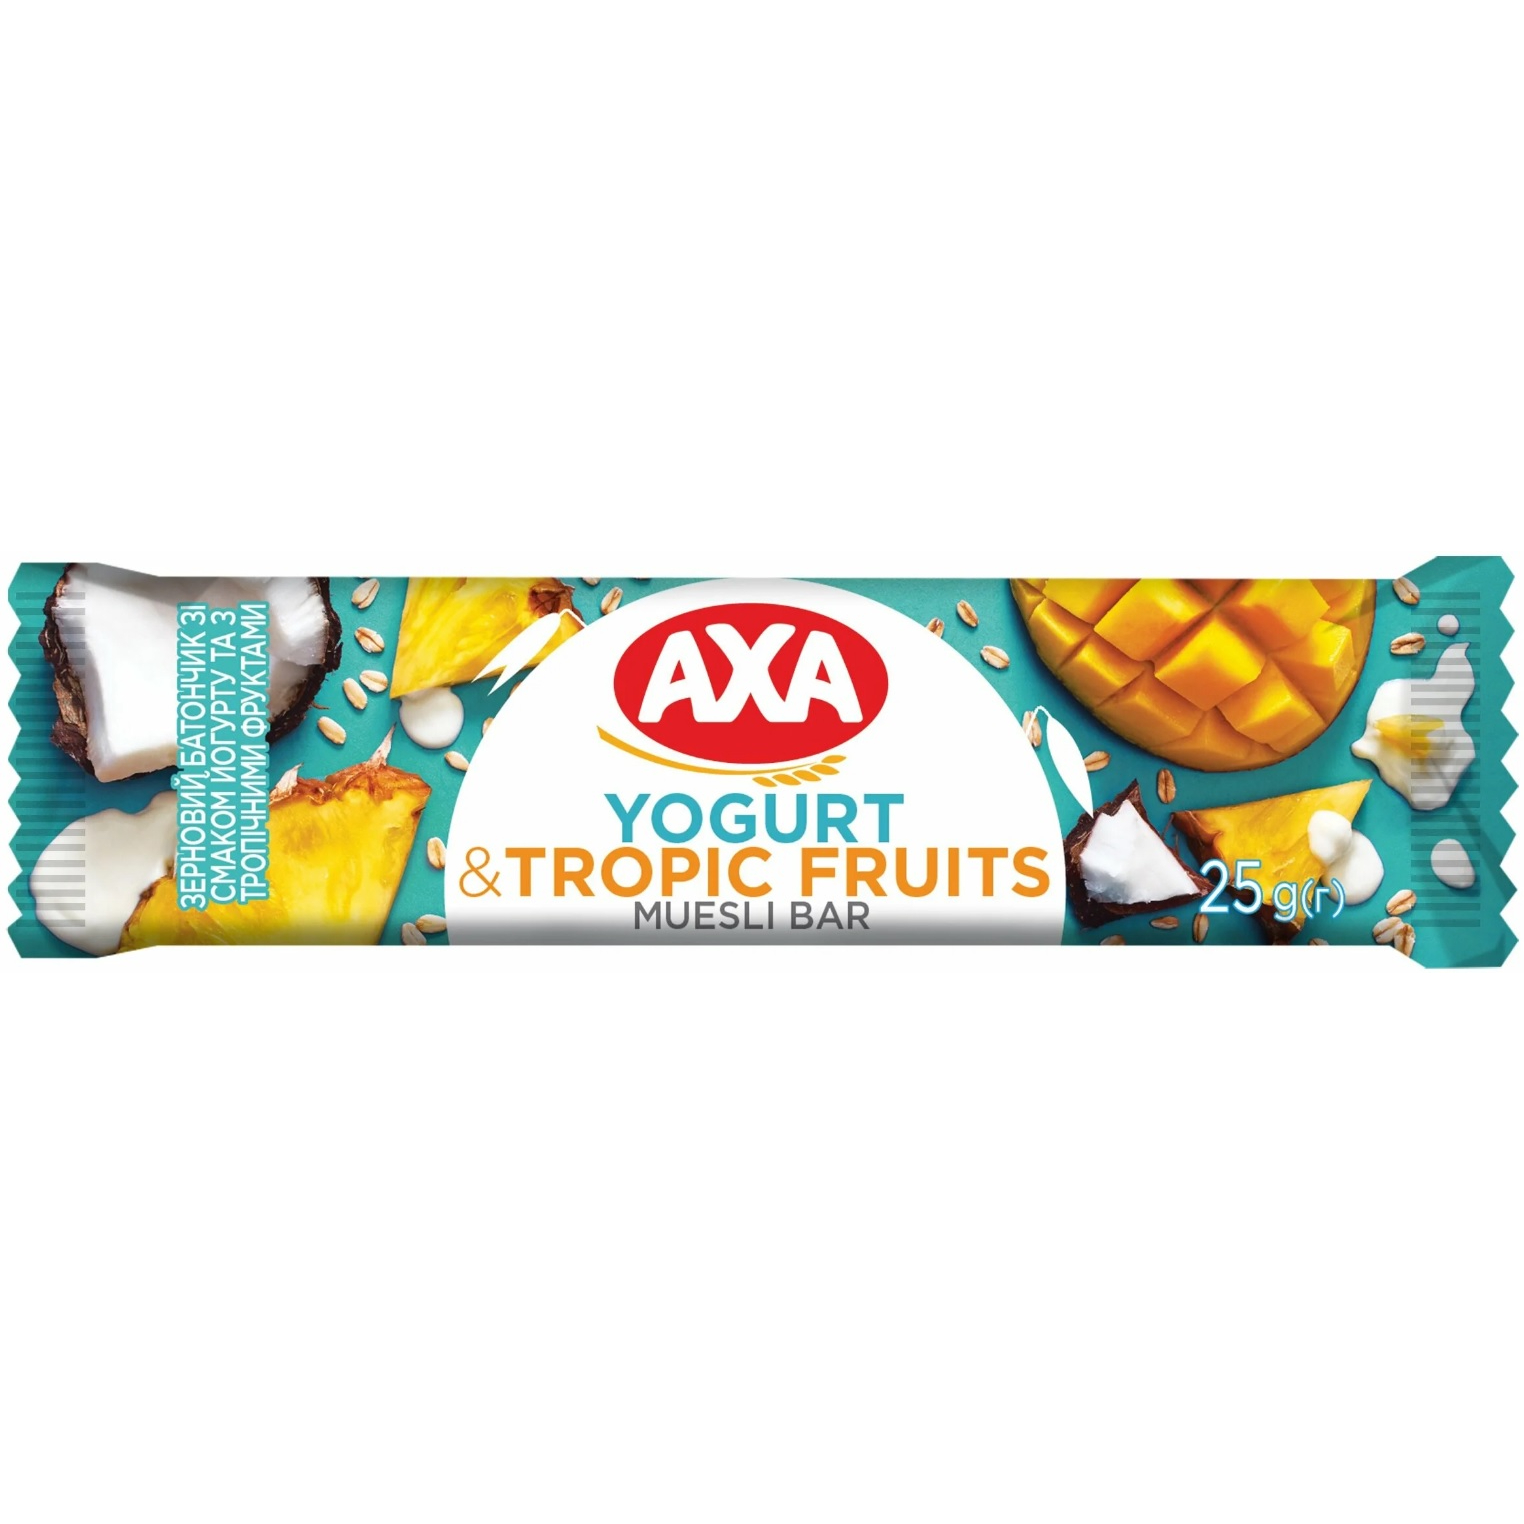 Батончик AXA зерновой со вкусом йогурта и тропическими фруктами, 25 г